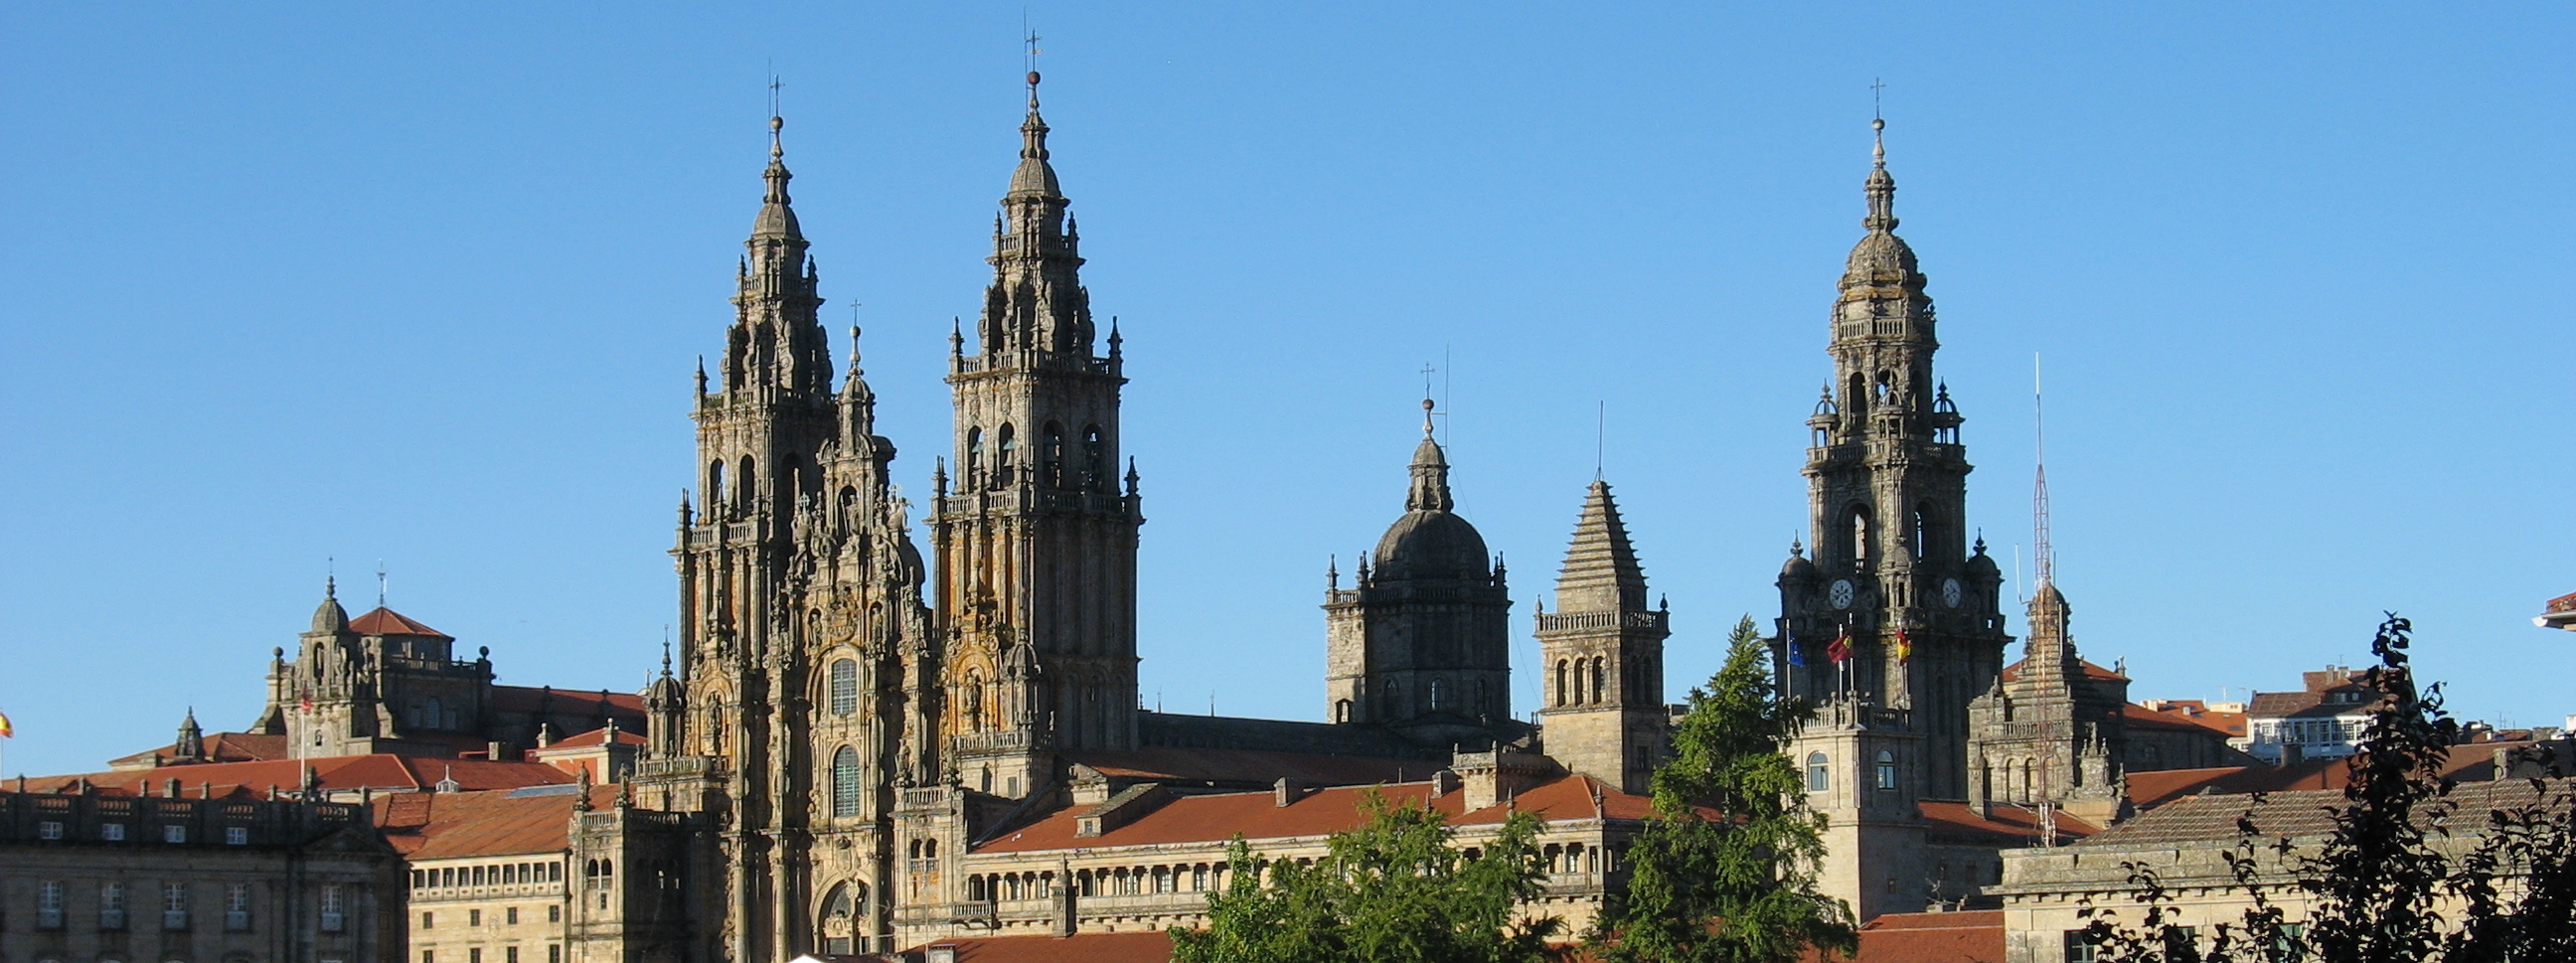 Santiago de Compostela Cathedral from Parque Alameda Galicia Spain